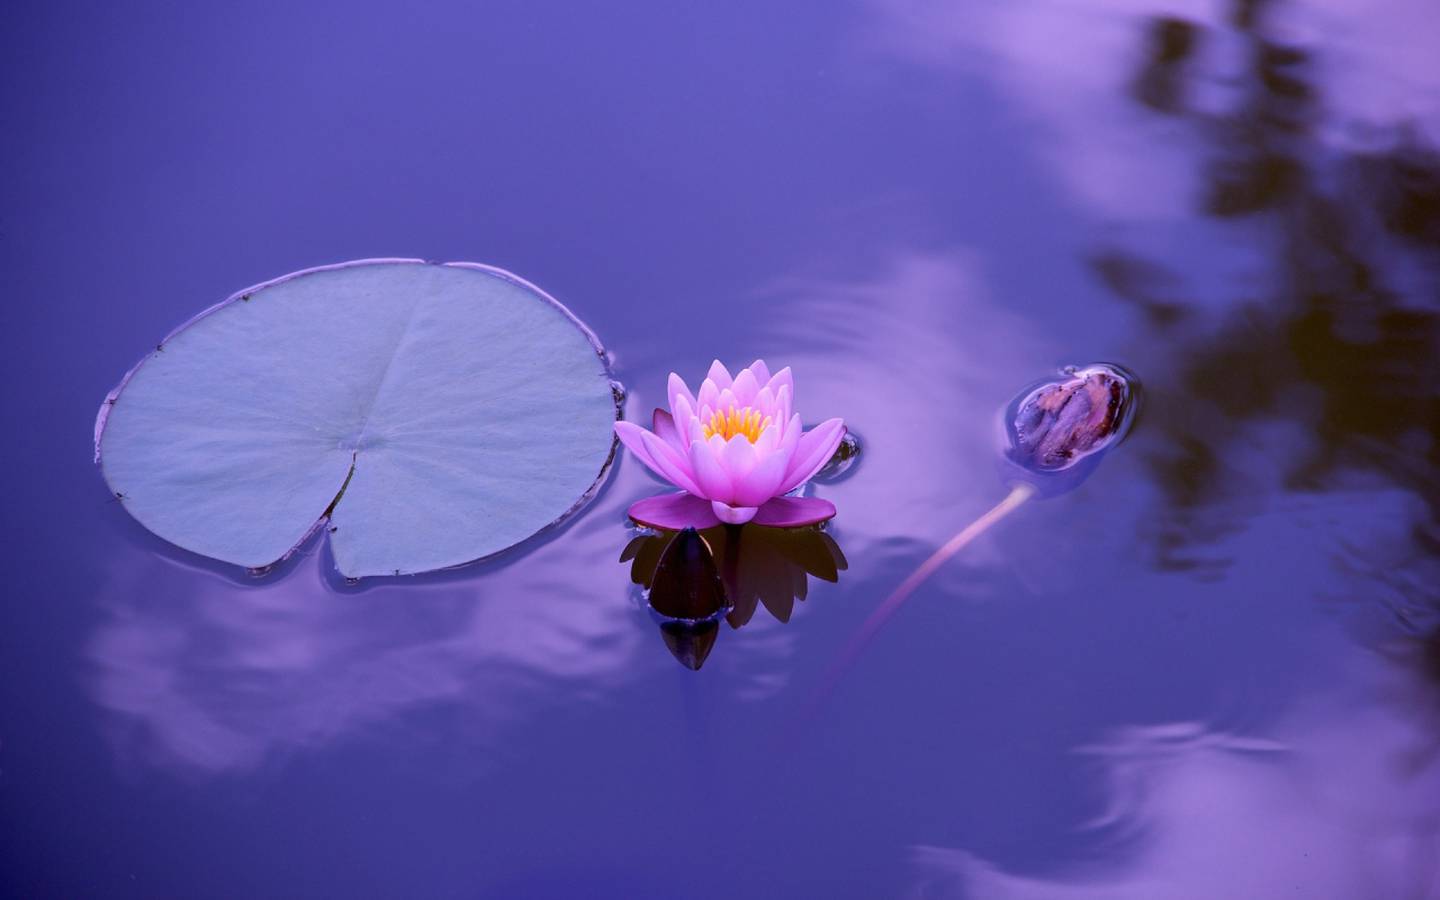 Flor de loto sobre agua quieta. A su lado, un renacuajo va nadando.